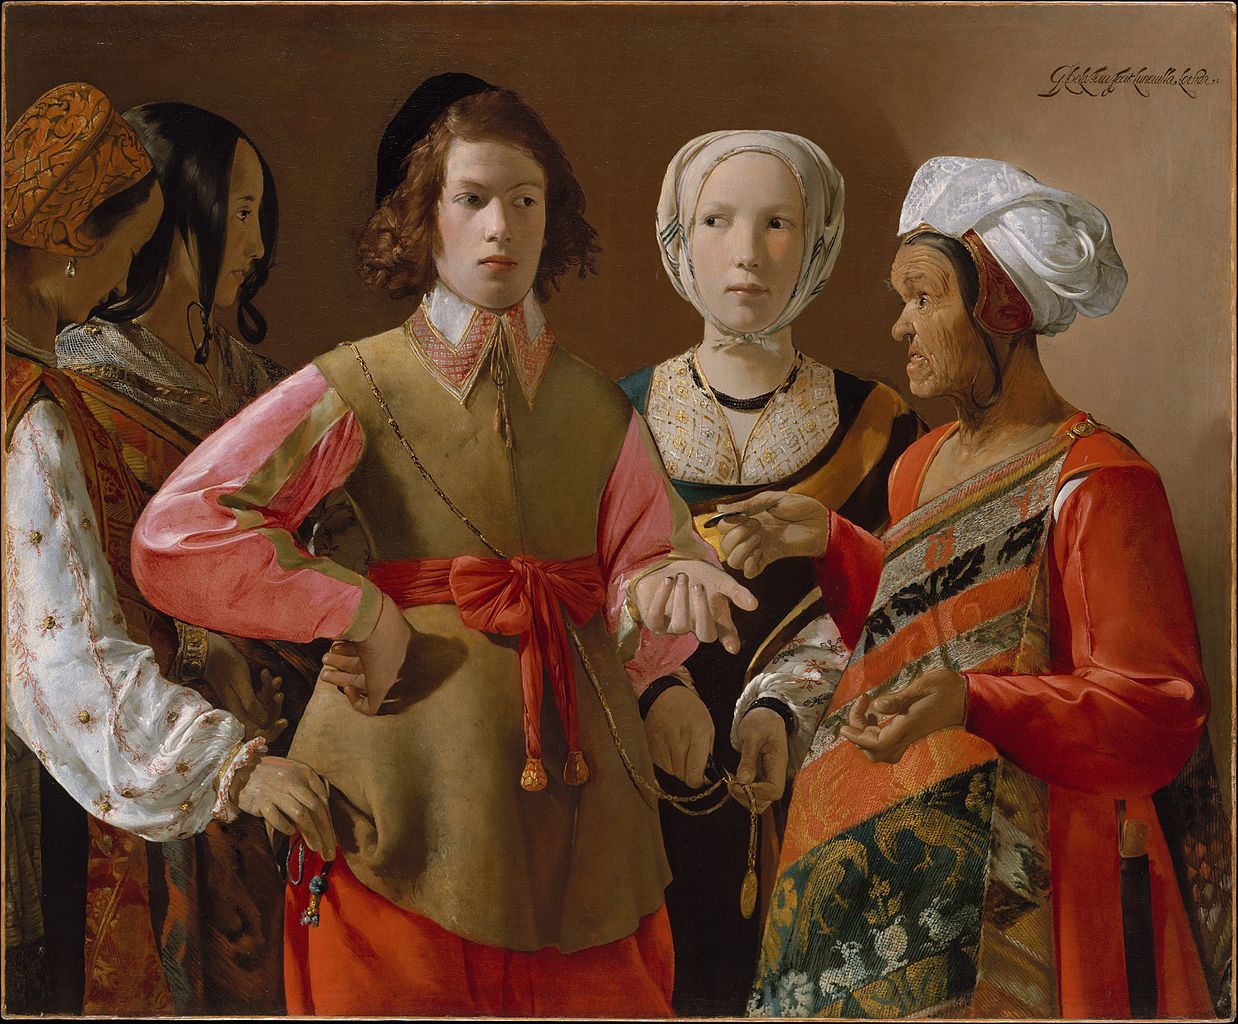 Baroque Era Painter - Georges de La Tour (1593-1652)